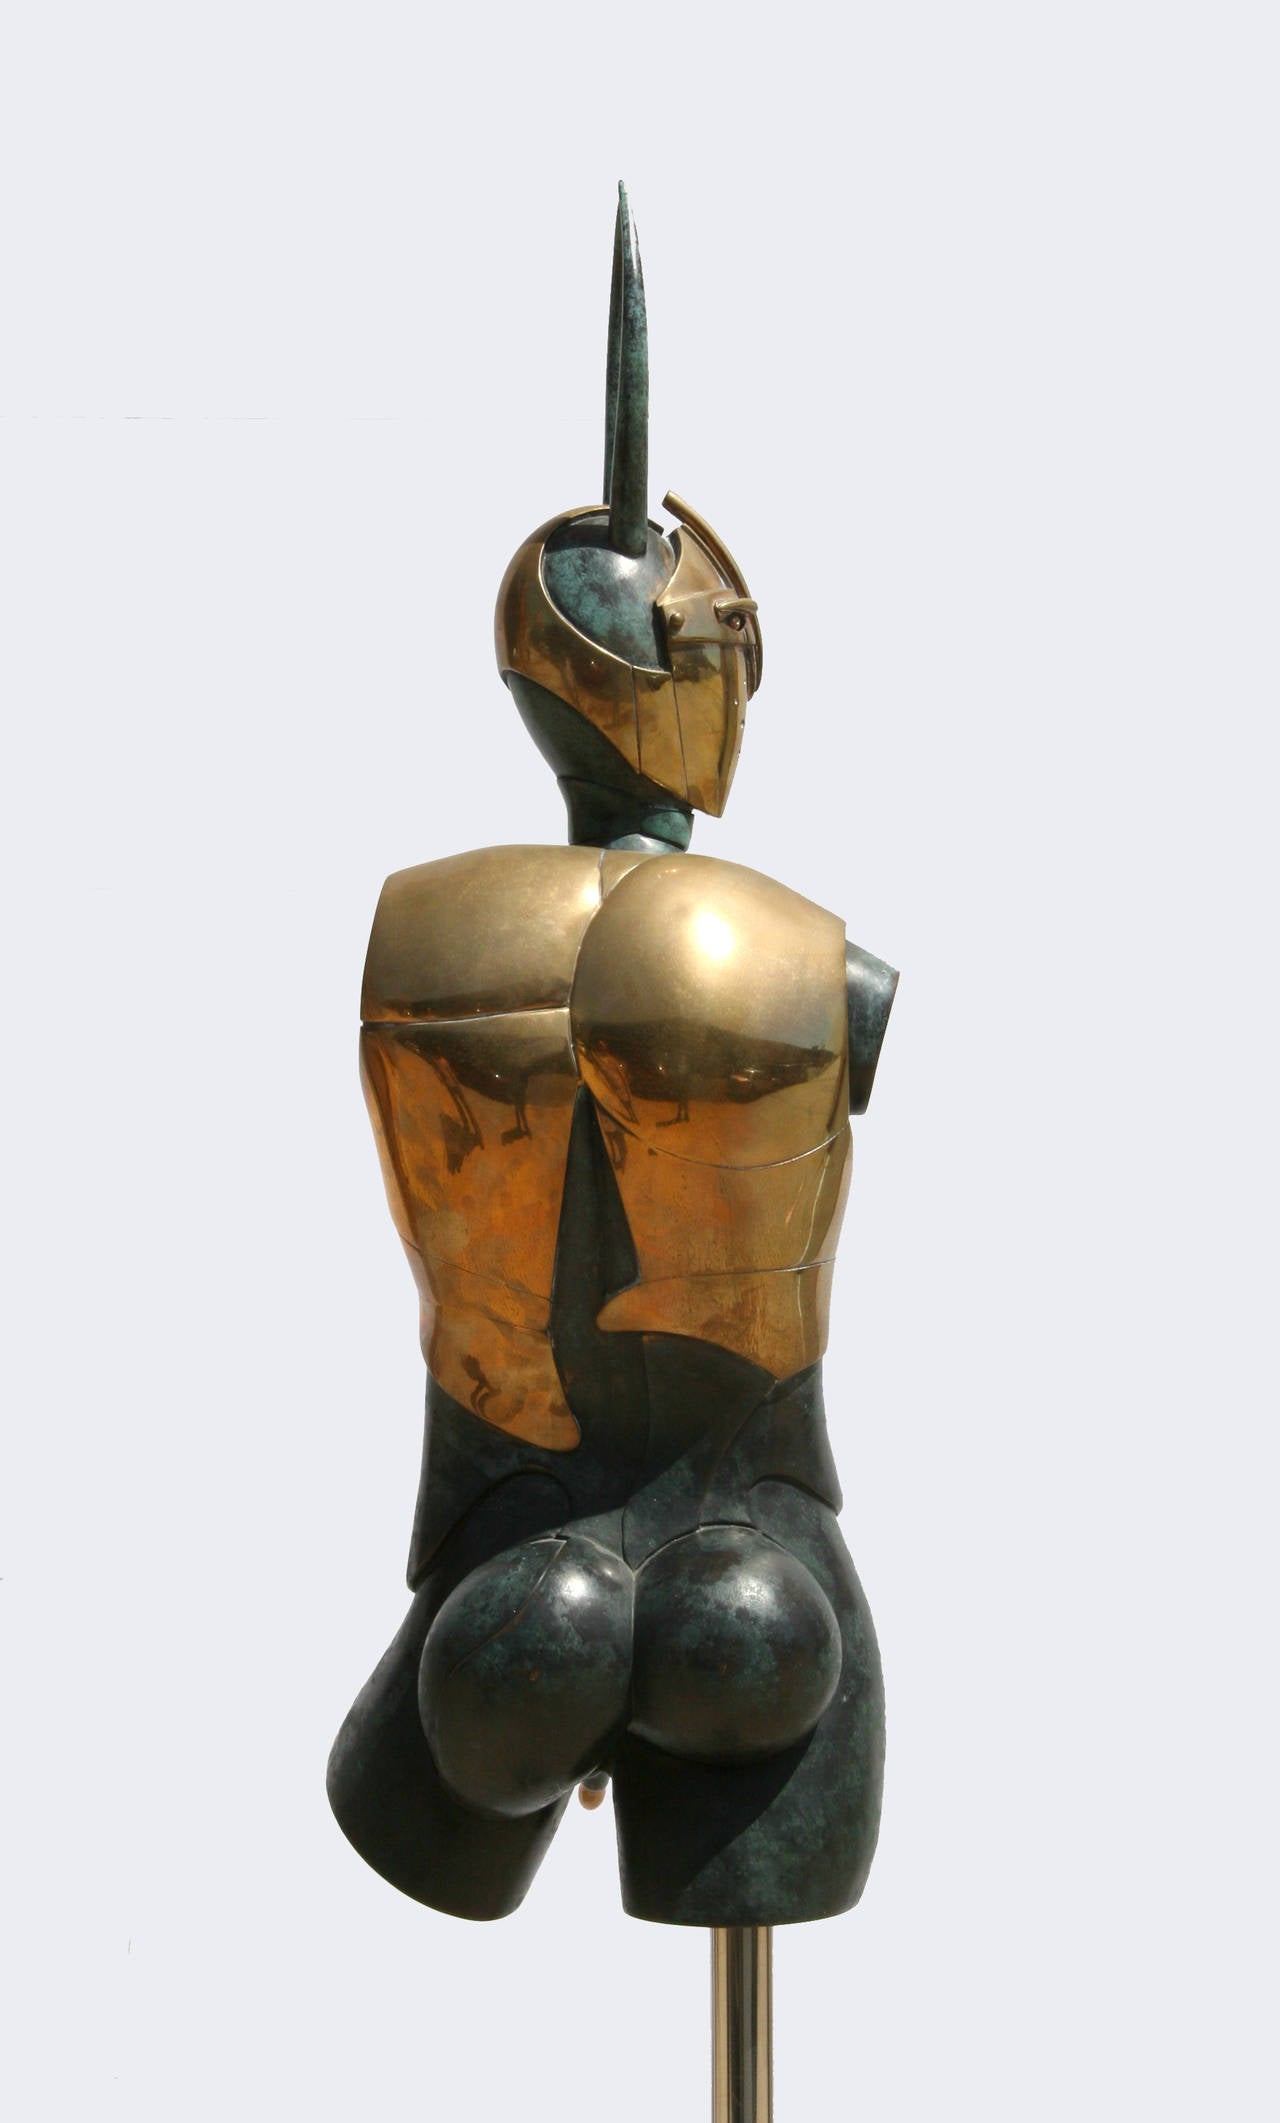 Minotaurus, Bronze Sculpture by Wunderlich - Gold Figurative Sculpture by Paul Wunderlich